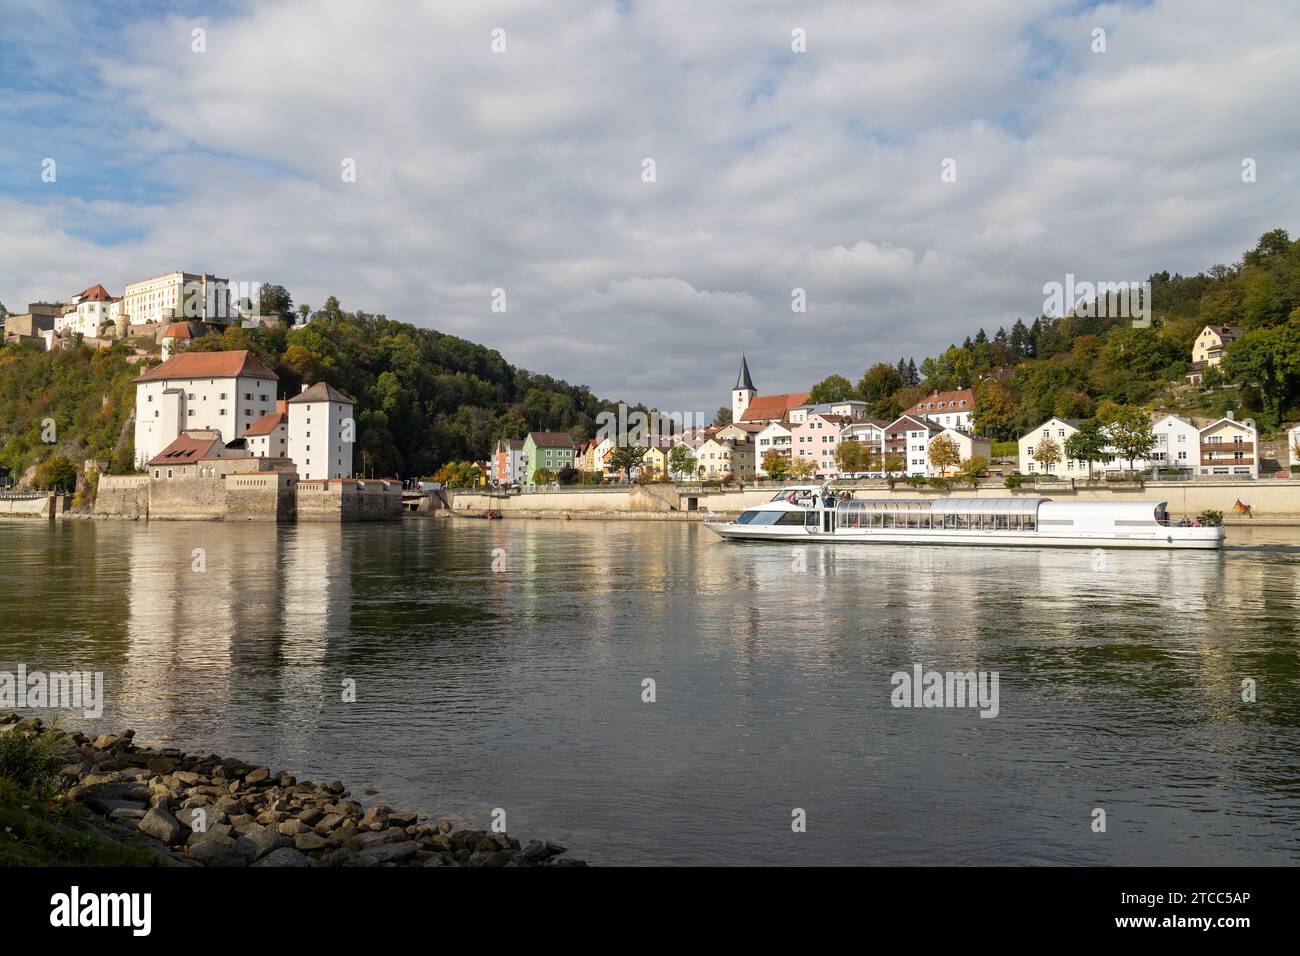 Blick auf Burg Veste Oberhaus, Donau Ufer und Fluss Ilz in Passau, Bayern, Deutschland im Herbst mit Donau und Fahrgastschiff Stockfoto